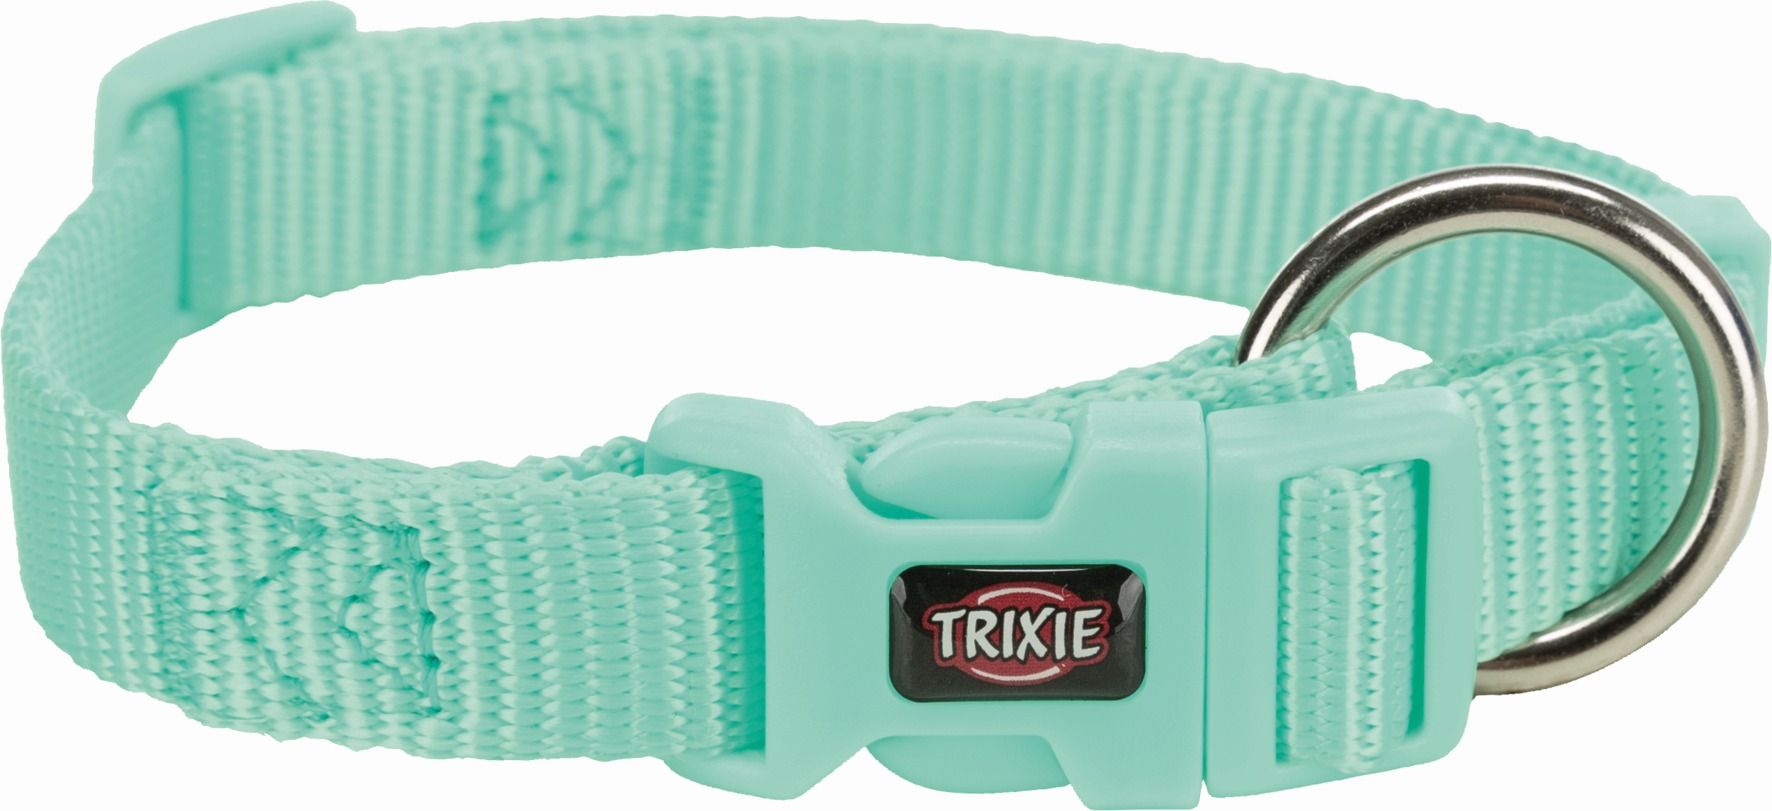  Ошейник Trixie Premium, XS-S, 22-35см, 10мм, мятный